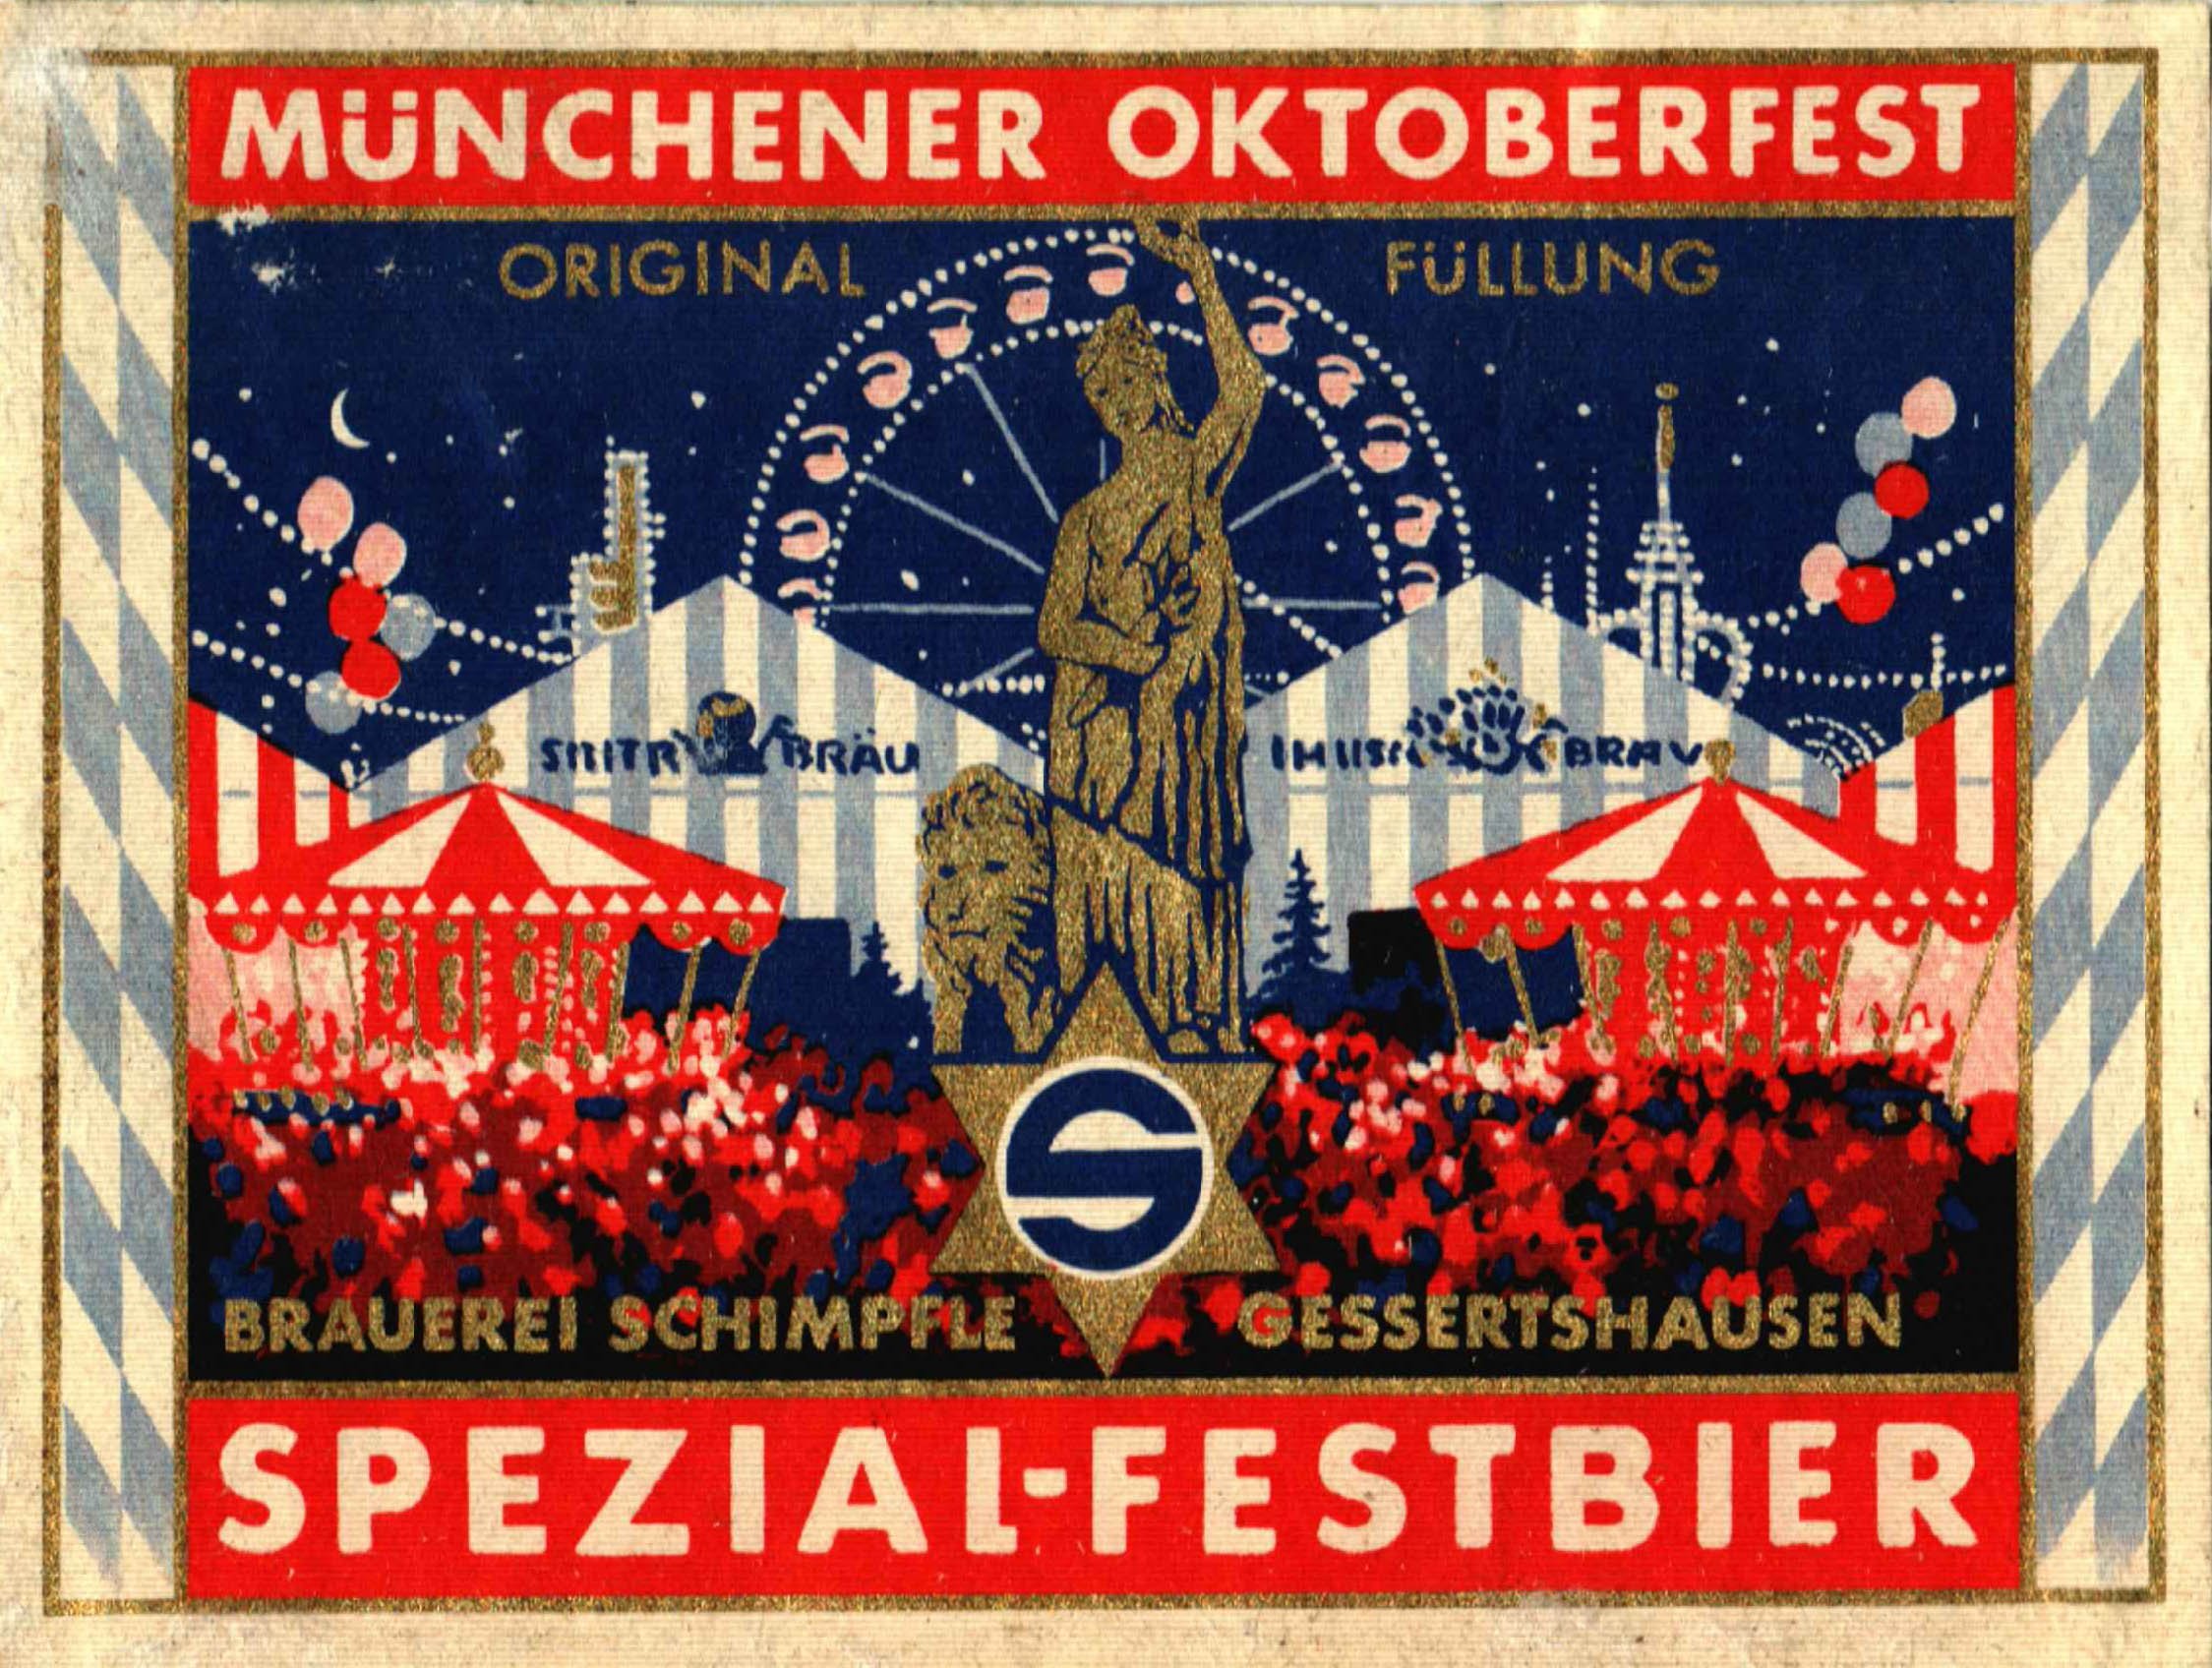 Etikett für Münchener Oktoberfest der Brauerei Schimpfle in Gessertshausen, um 1962 (ARCHIV DEUTSCHER BIERETIKETTEN CC BY-NC-SA)